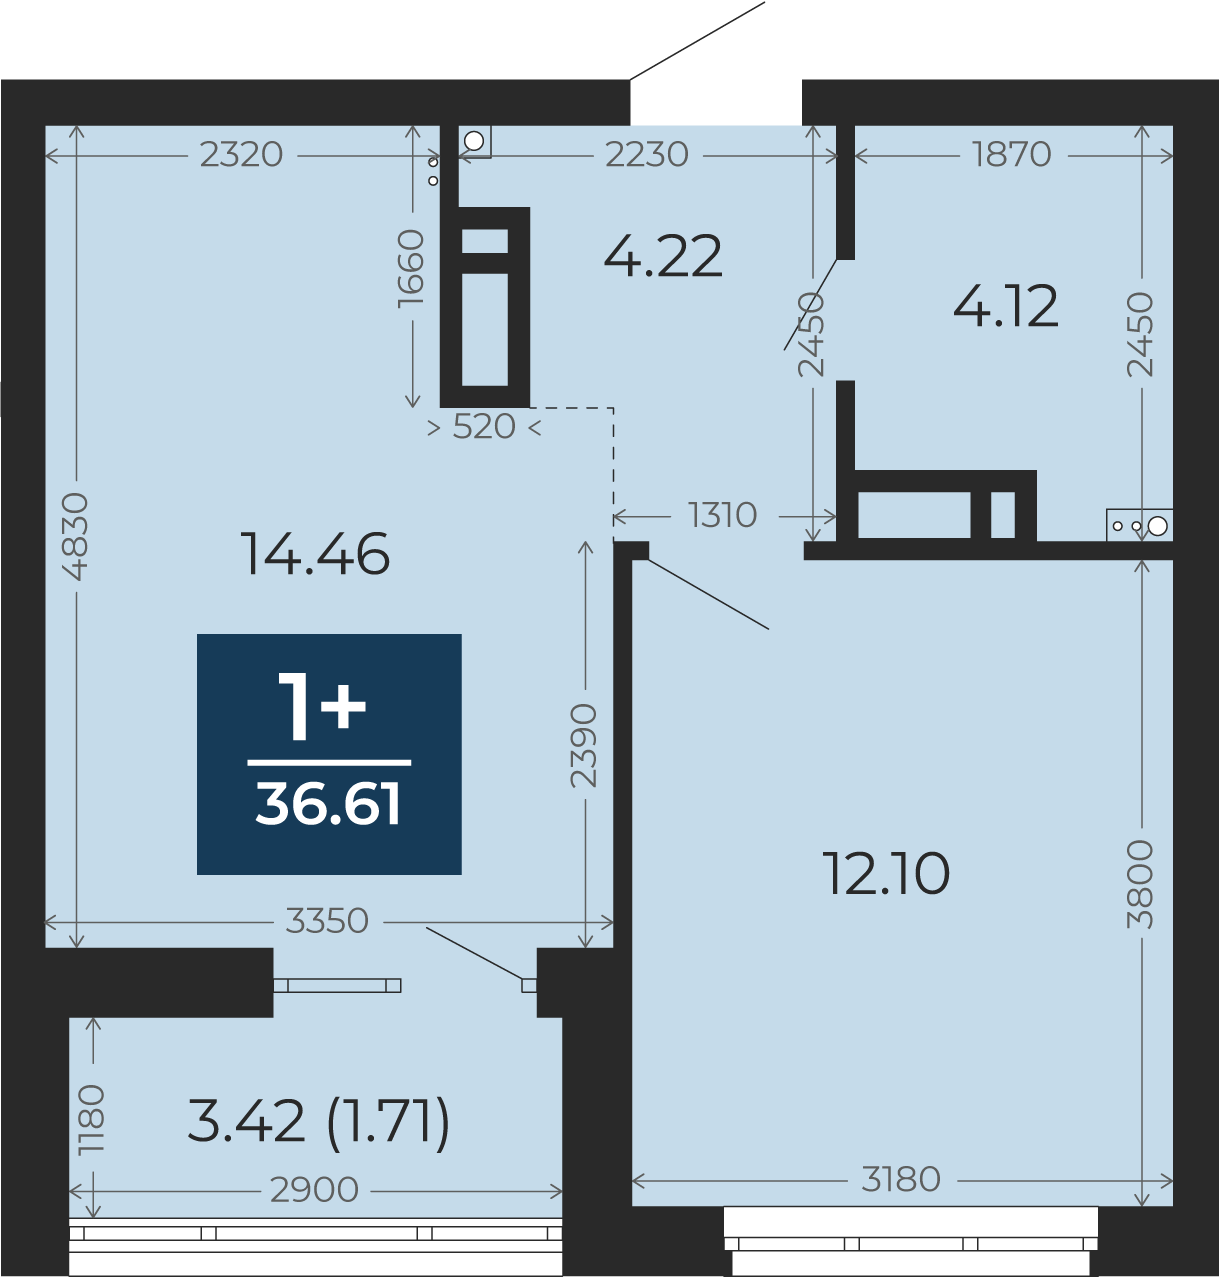 Квартира № 235, 1-комнатная, 36.61 кв. м, 11 этаж